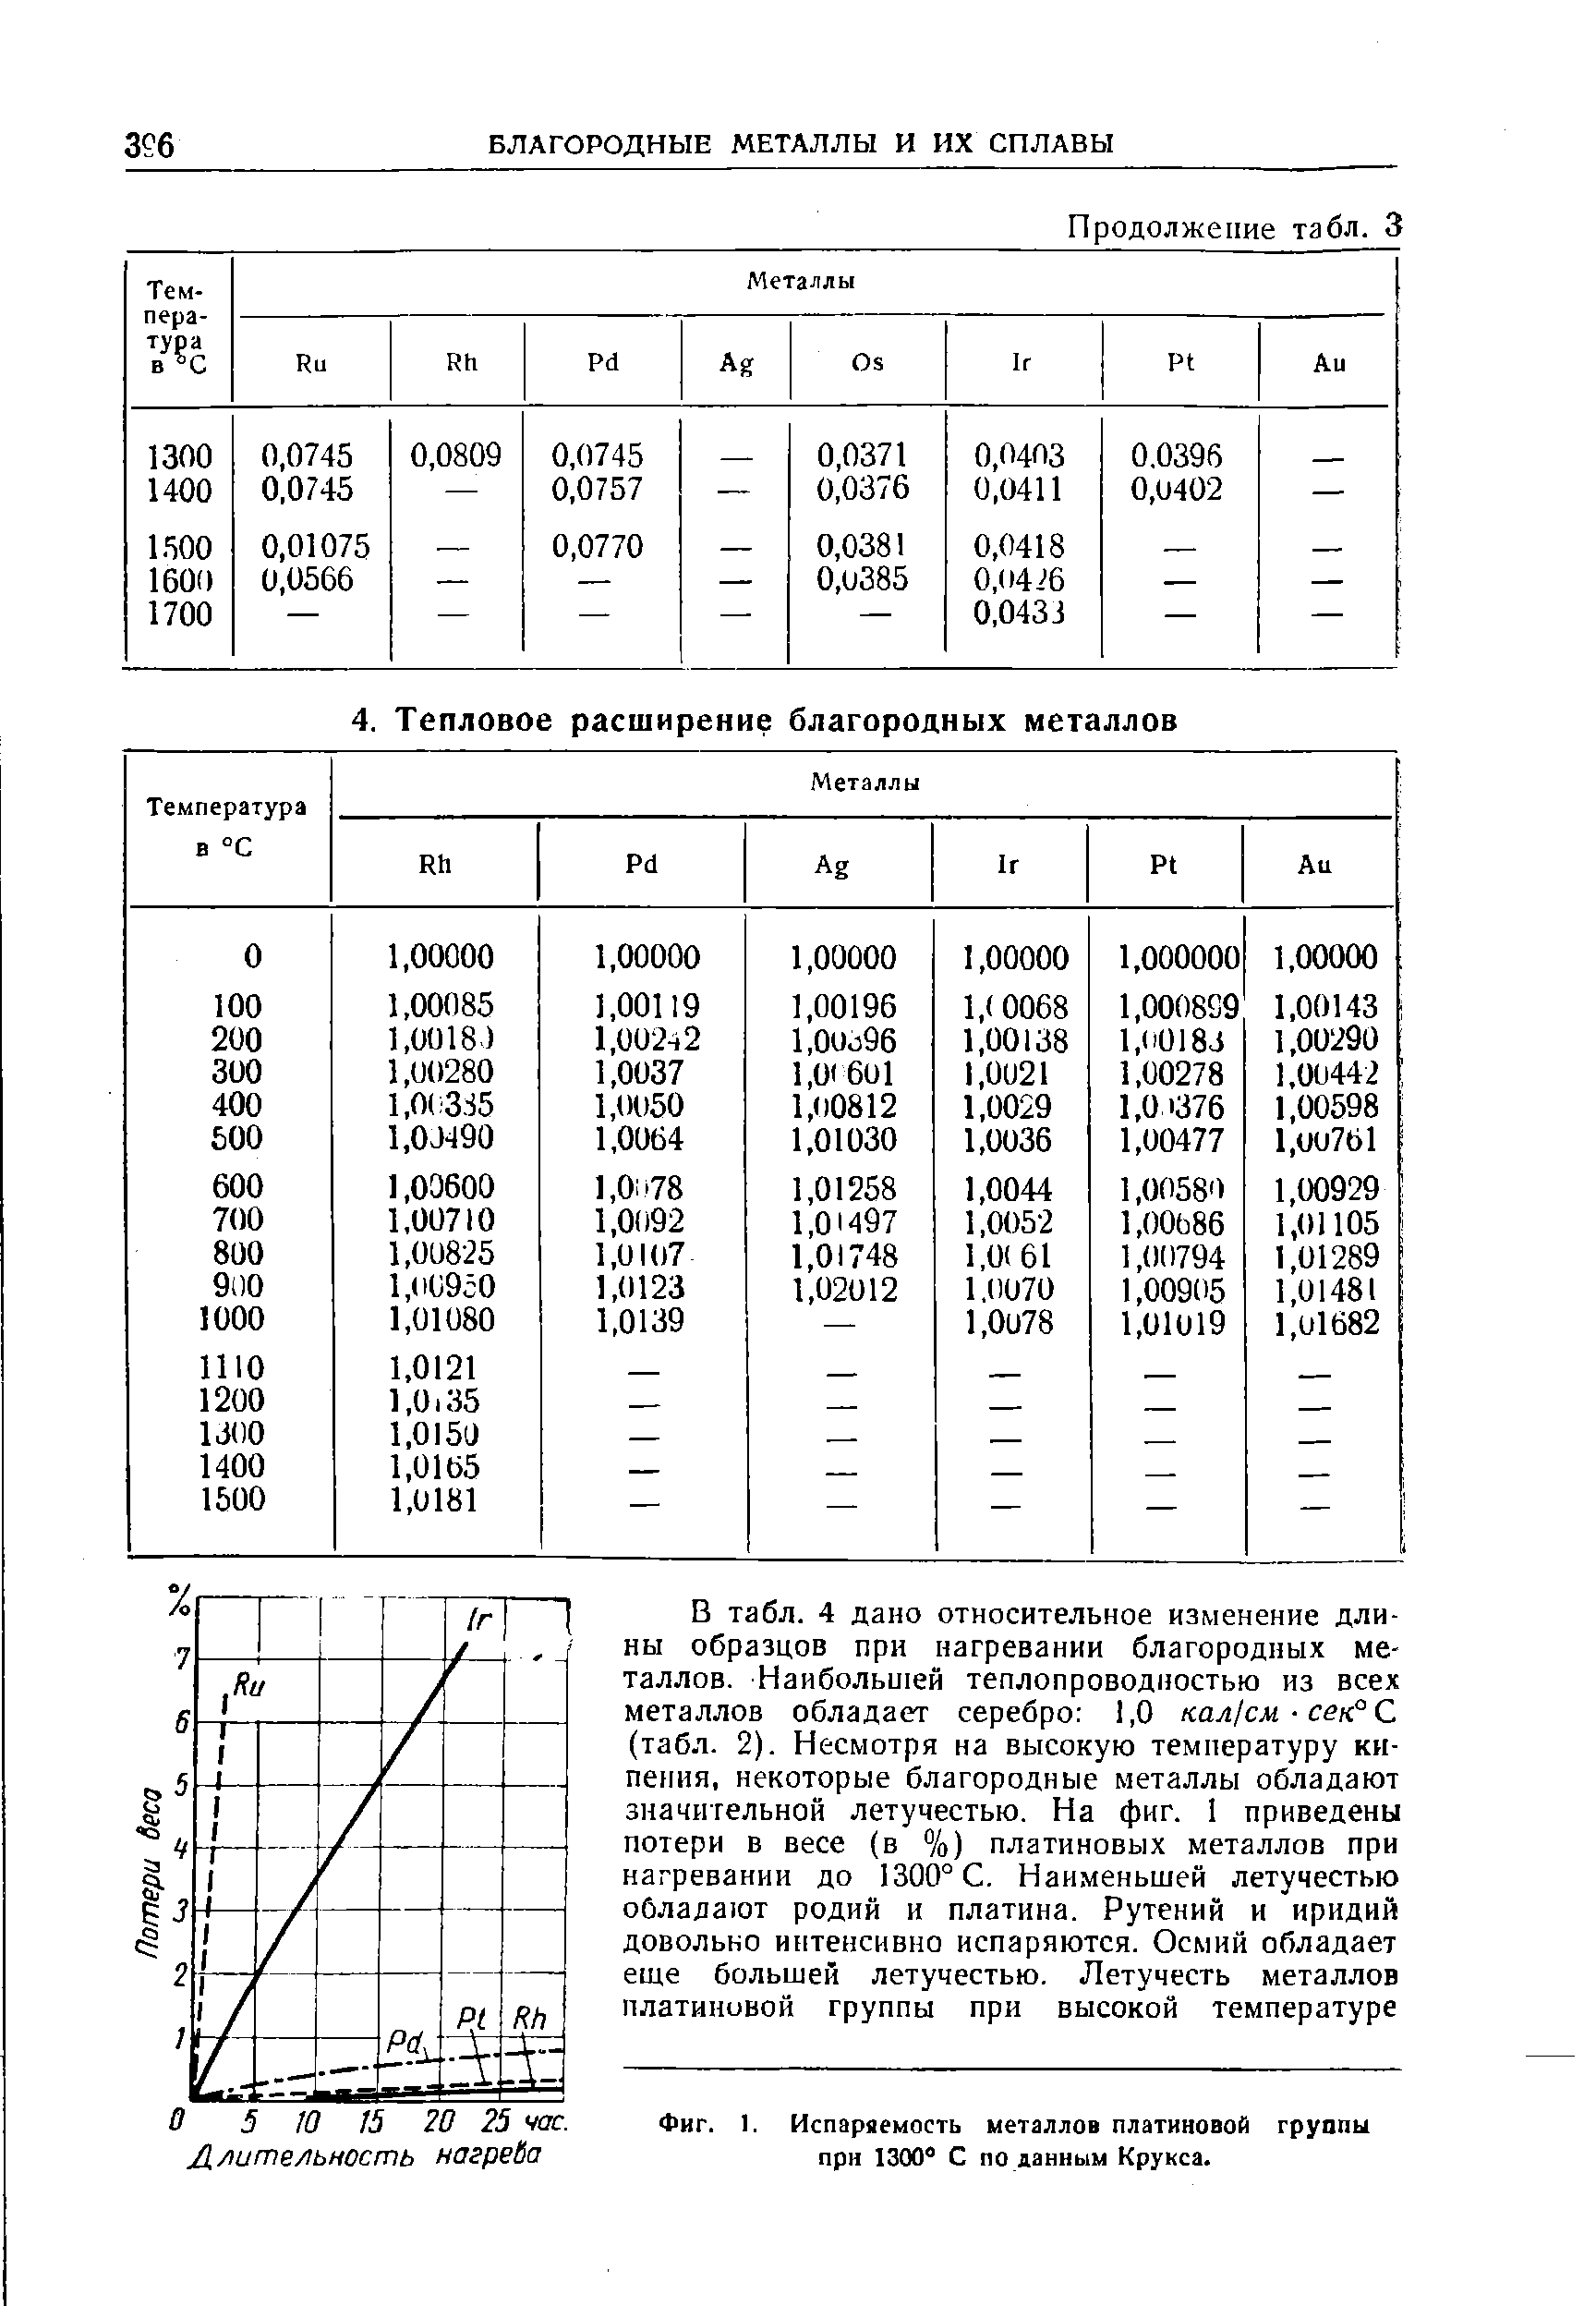 Фиг. 1. Испаряемость металлов платиновой группы при 1300° С по данным Крукса.
